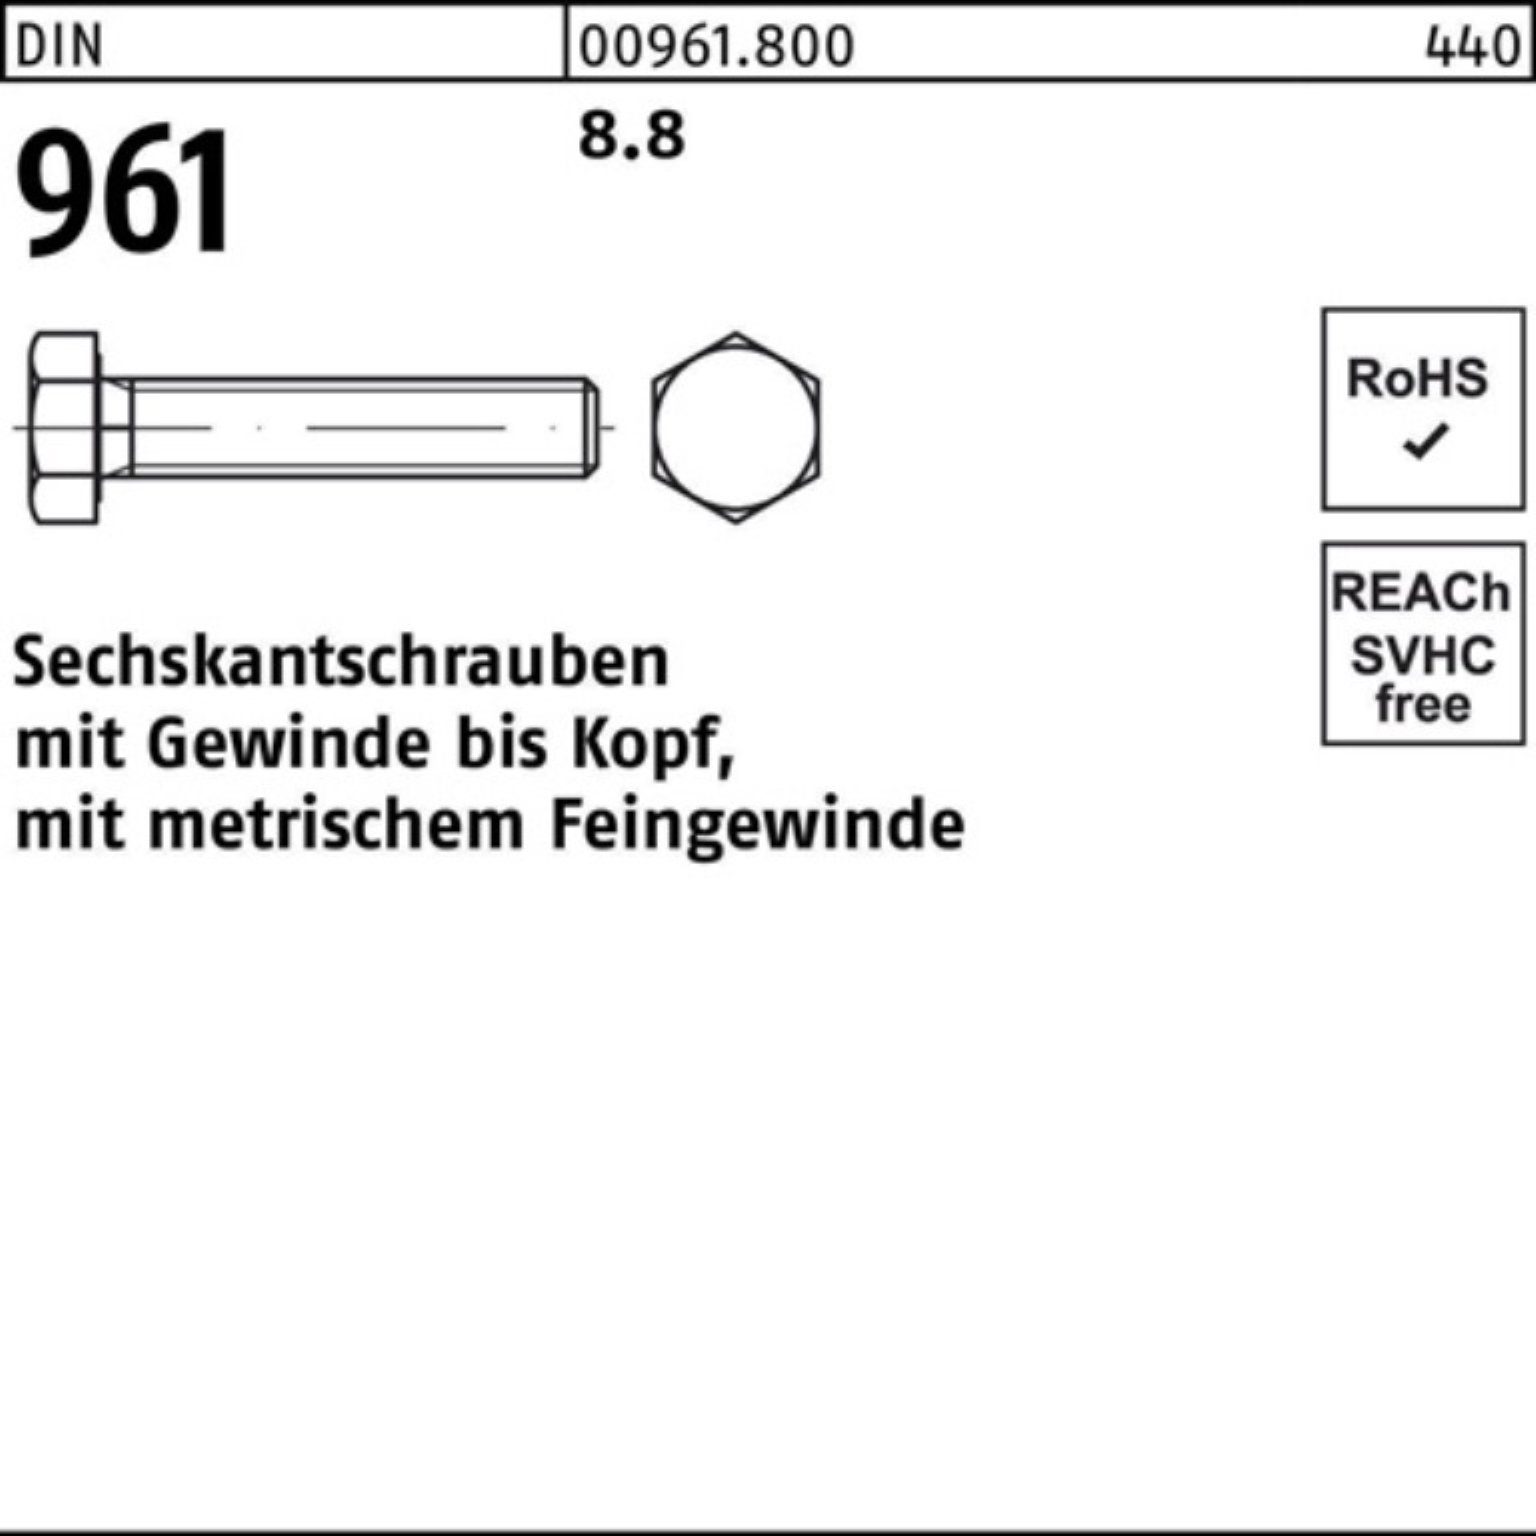 Pack Sechskantschraube VG M14x1,5x Stück 961 90 100er DIN DIN 50 8.8 Reyher Sechskantschraube